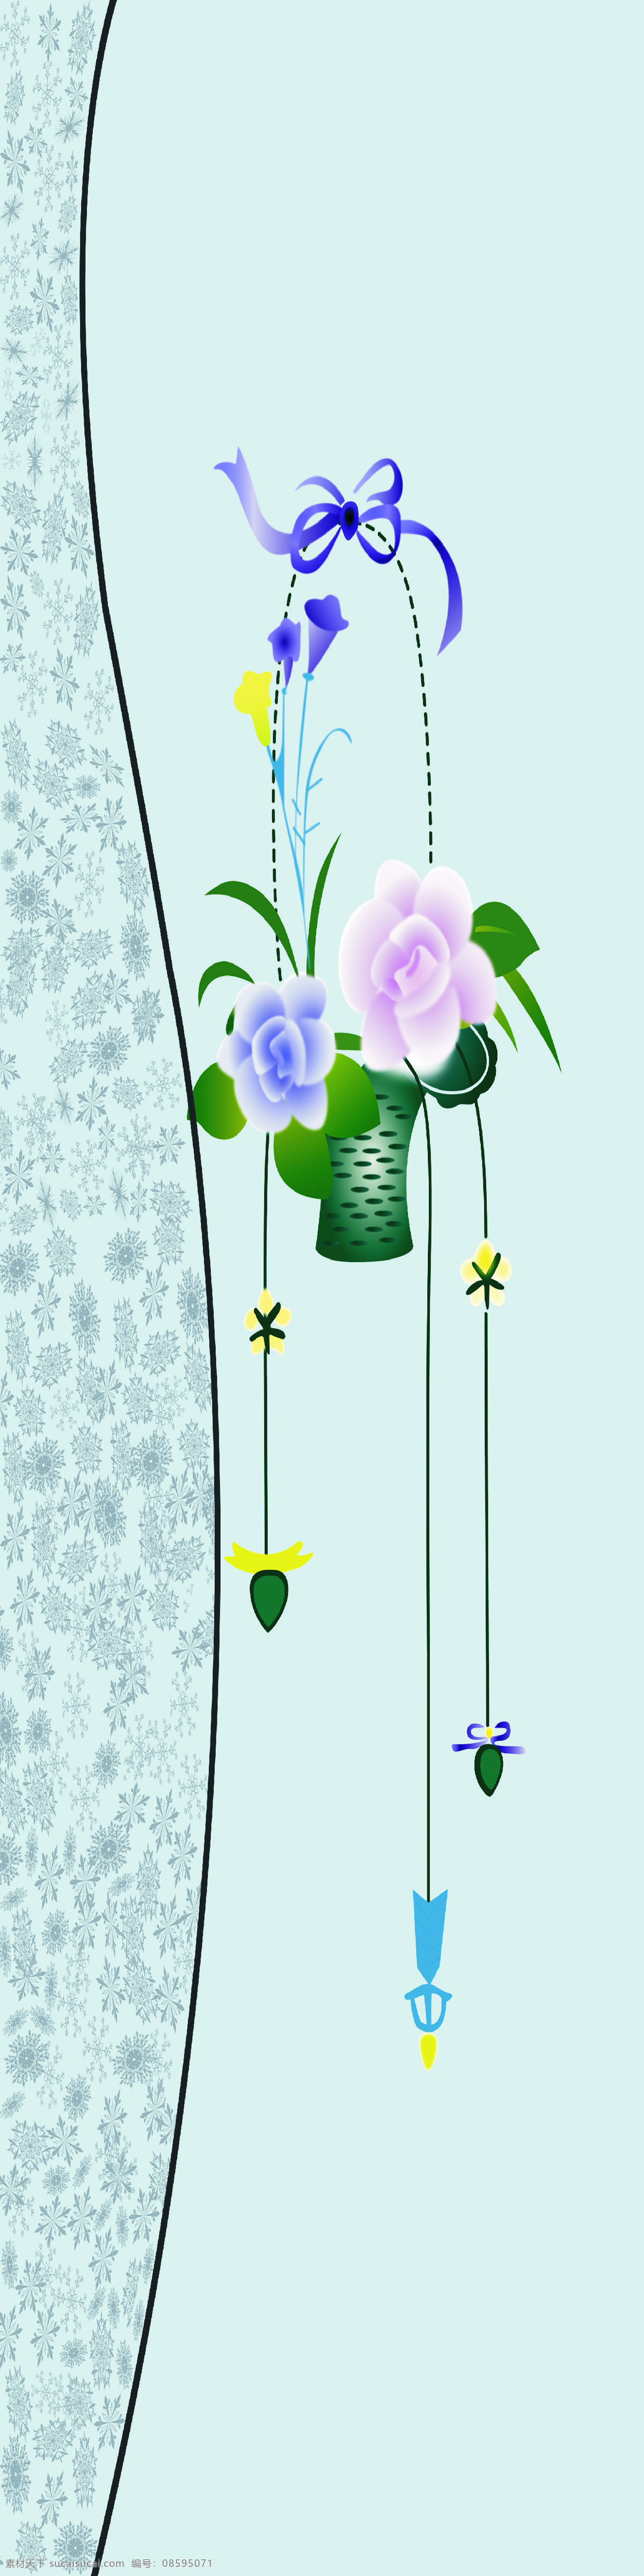 吊篮花朵 移门 吊篮 花朵 蝴蝶结 暗花 弧线 移门图案 底纹边框